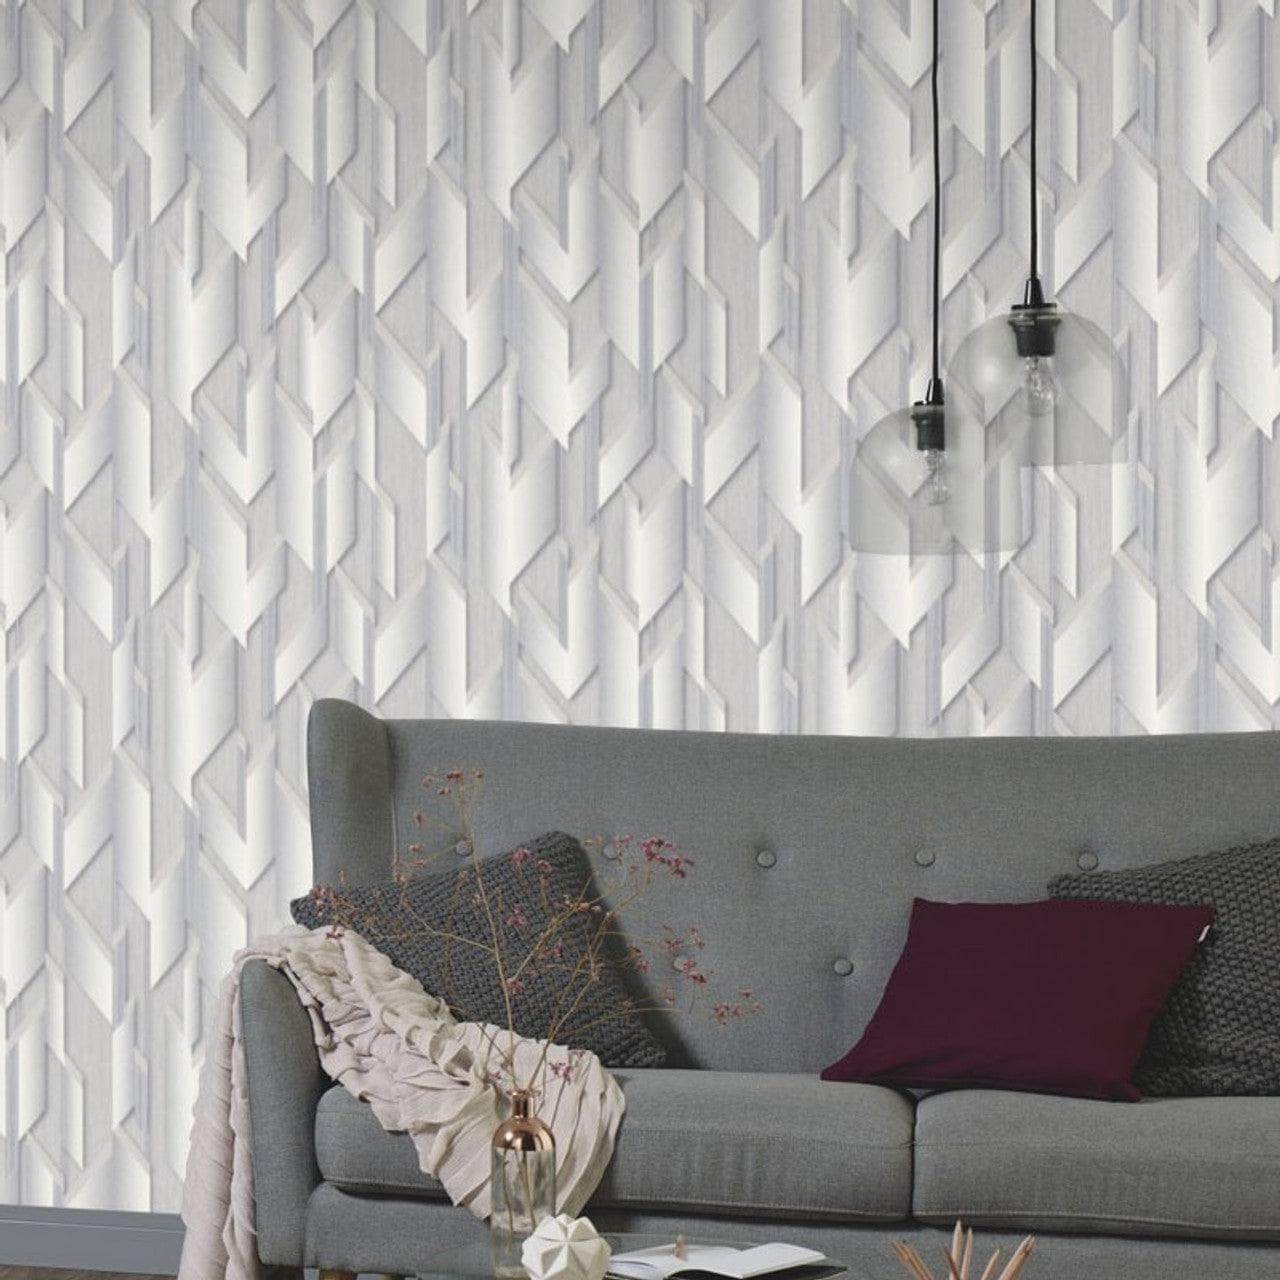 Wallpaper  -  Erismann Fashion For Walls Silver/Grey Wallpaper - 10145-31  -  60003974